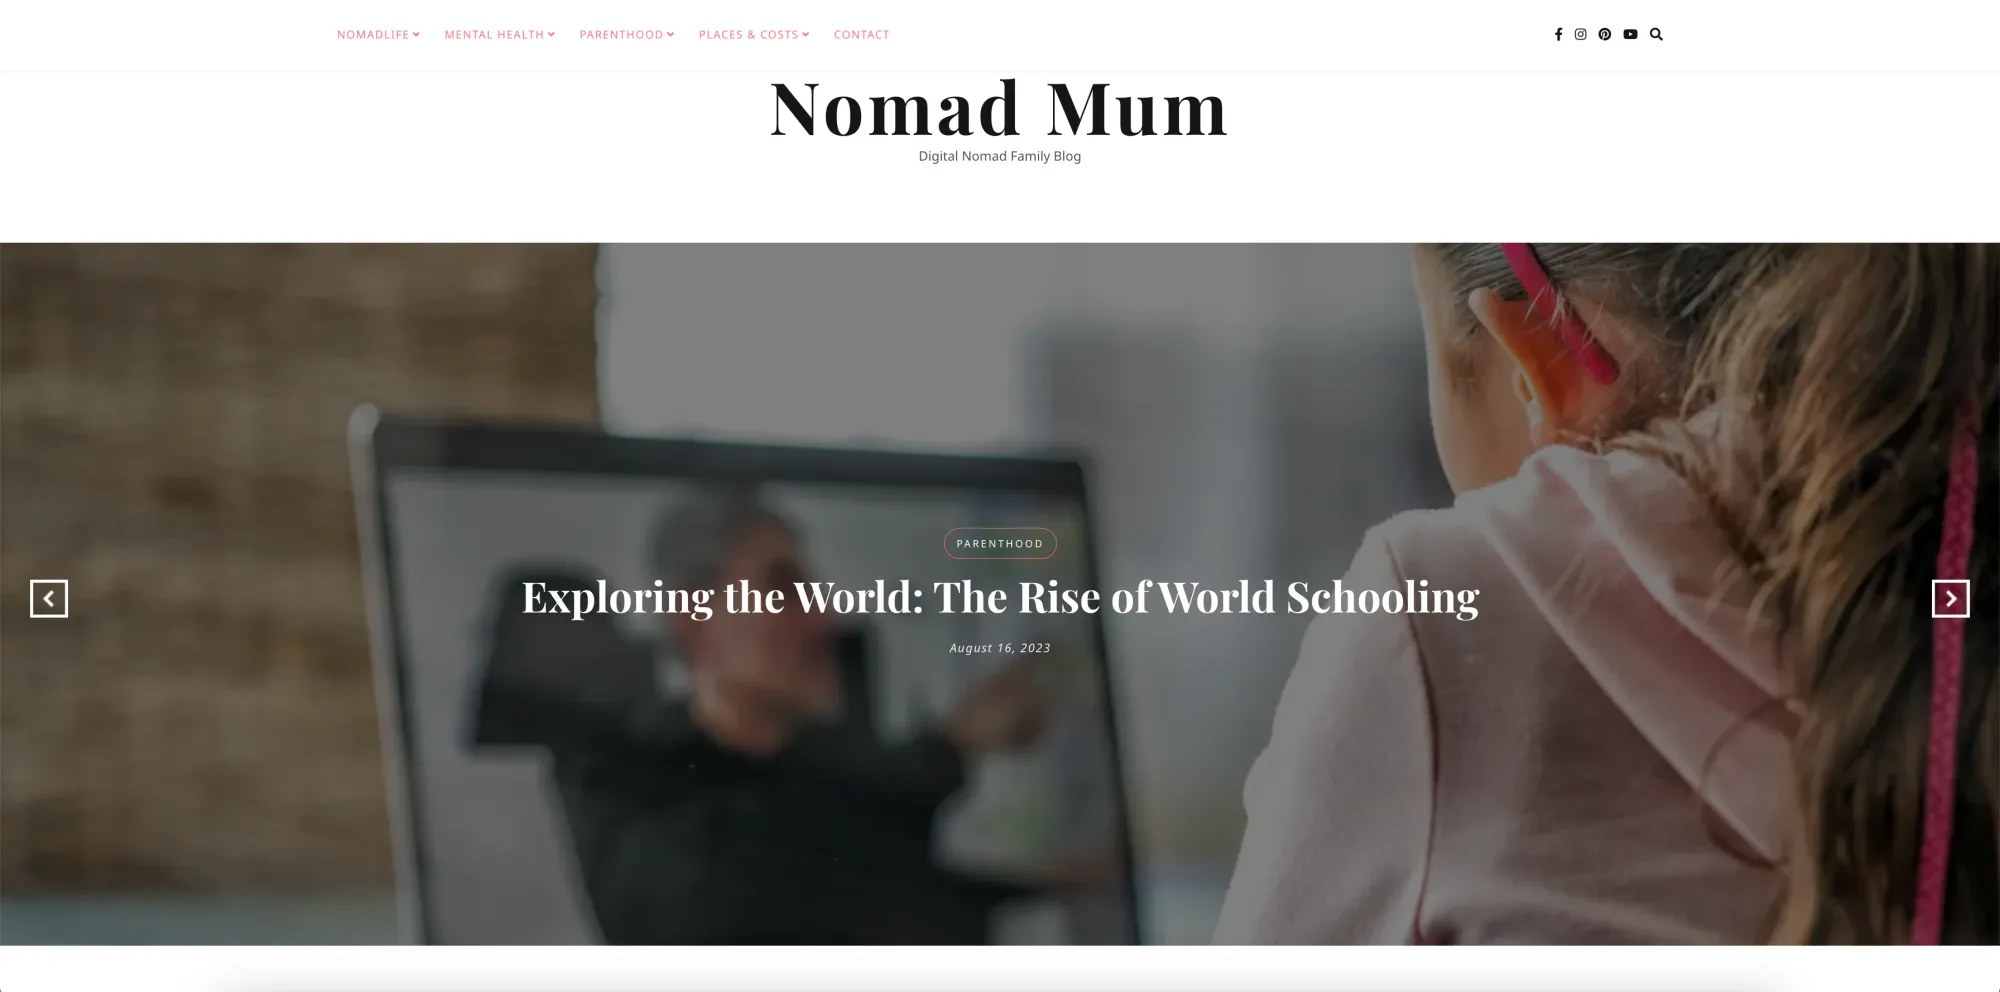 nomad mym, a digital nomad family blog